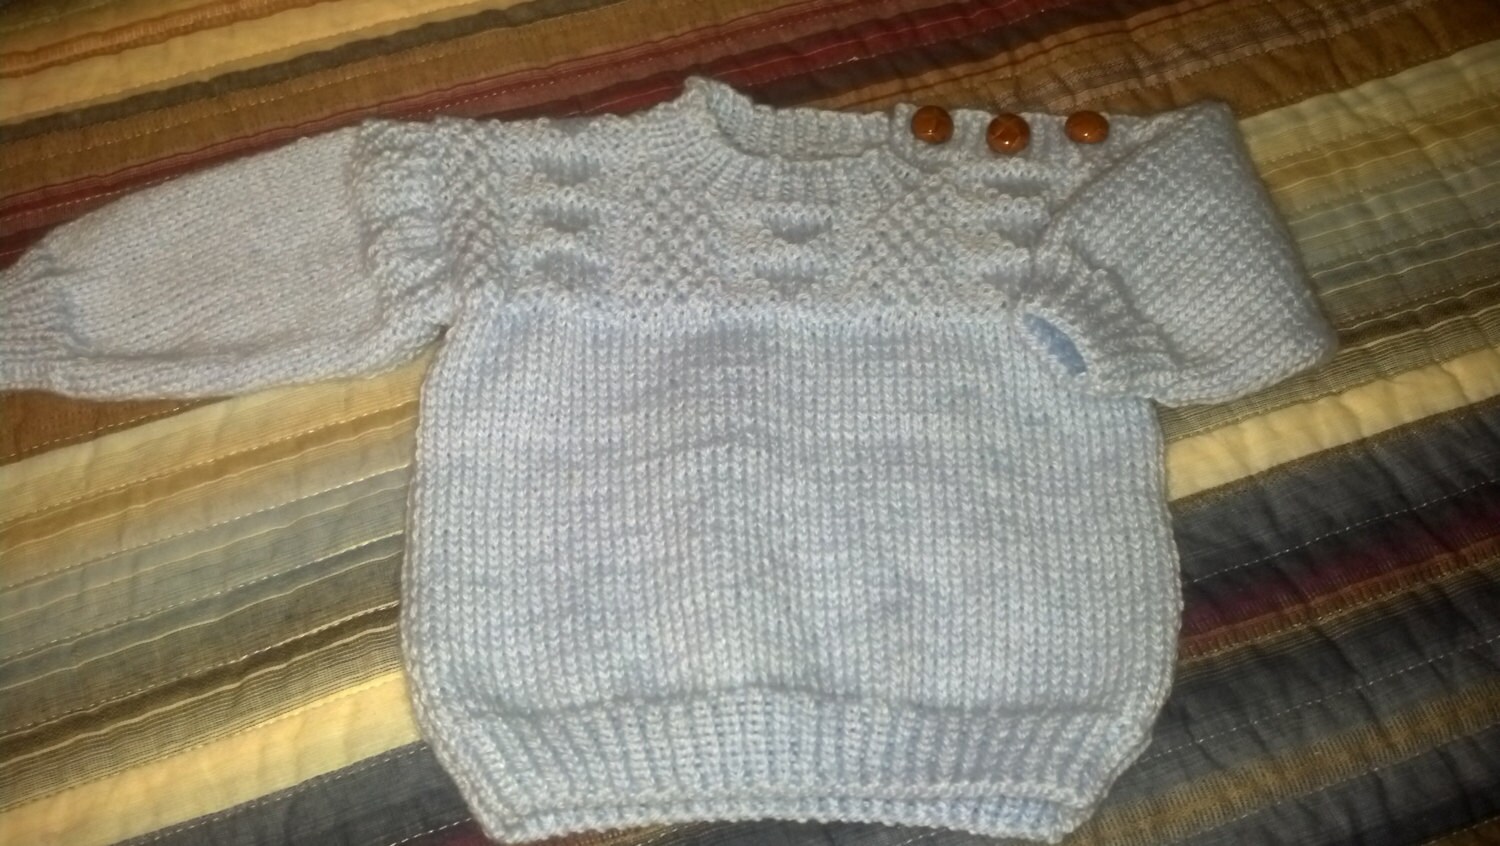 Guernsey Sweater in Baby Blue by Never Felt Better Kleding Jongenskleding Babykleding voor jongens Truien 